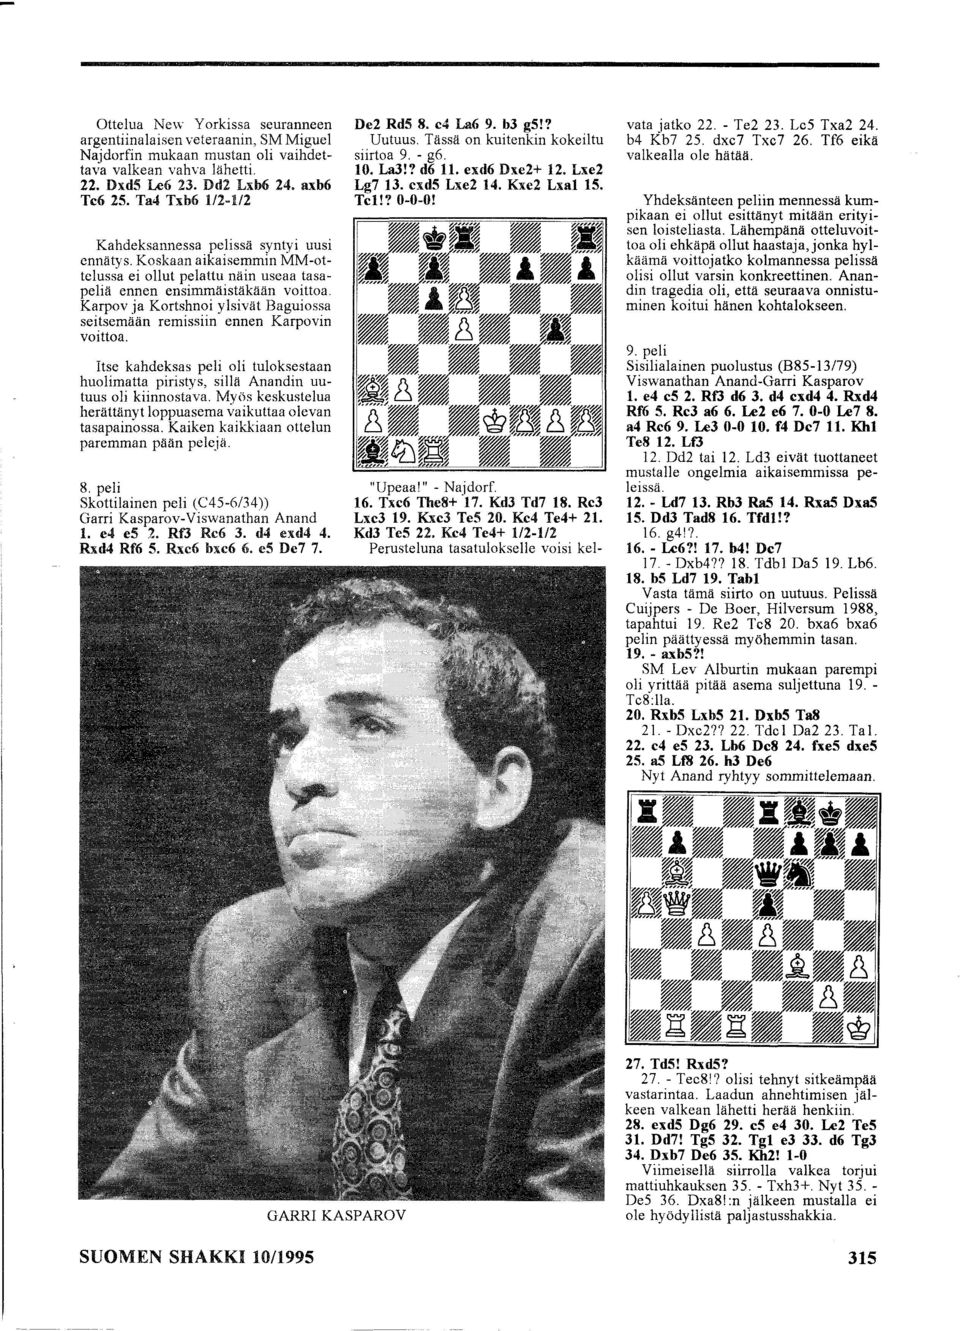 Karpov ja Kortshnoi ylsivät Baguiossa seitsemään remissiin ennen Karpovin voittoa. Itse kahdeksas peli oli tuloksestaan huolimatta piristys, sillä Anandin uutuus oli kiinnostava.